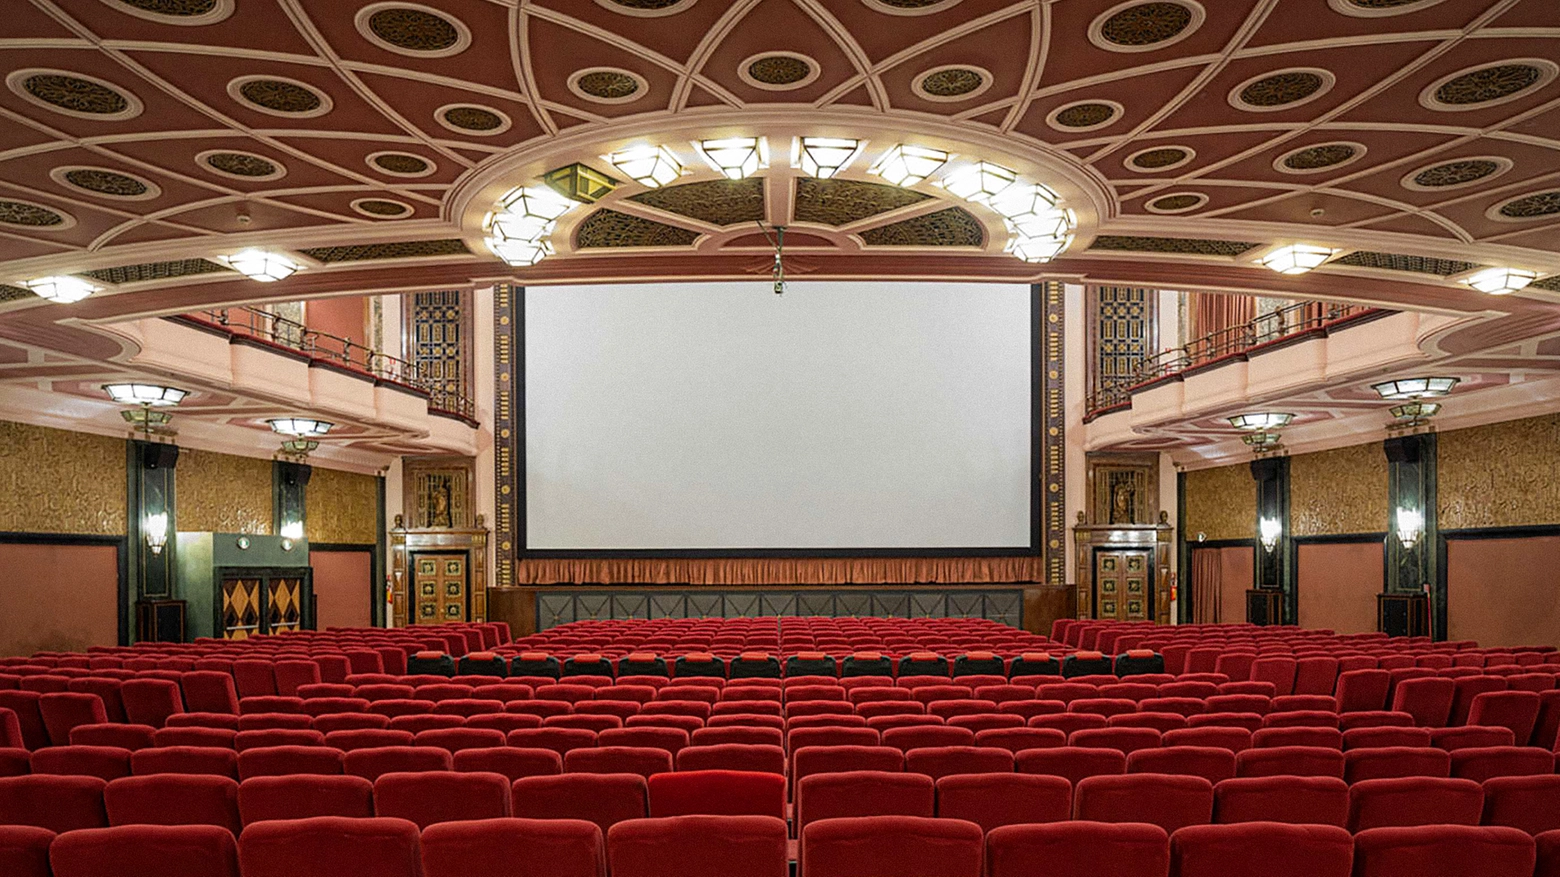 La sala principale del cinema Odeon, sopra lo schermo la scritta (qui non visibile) "Ex taenebris vita", "Dalle tenebre la vita"